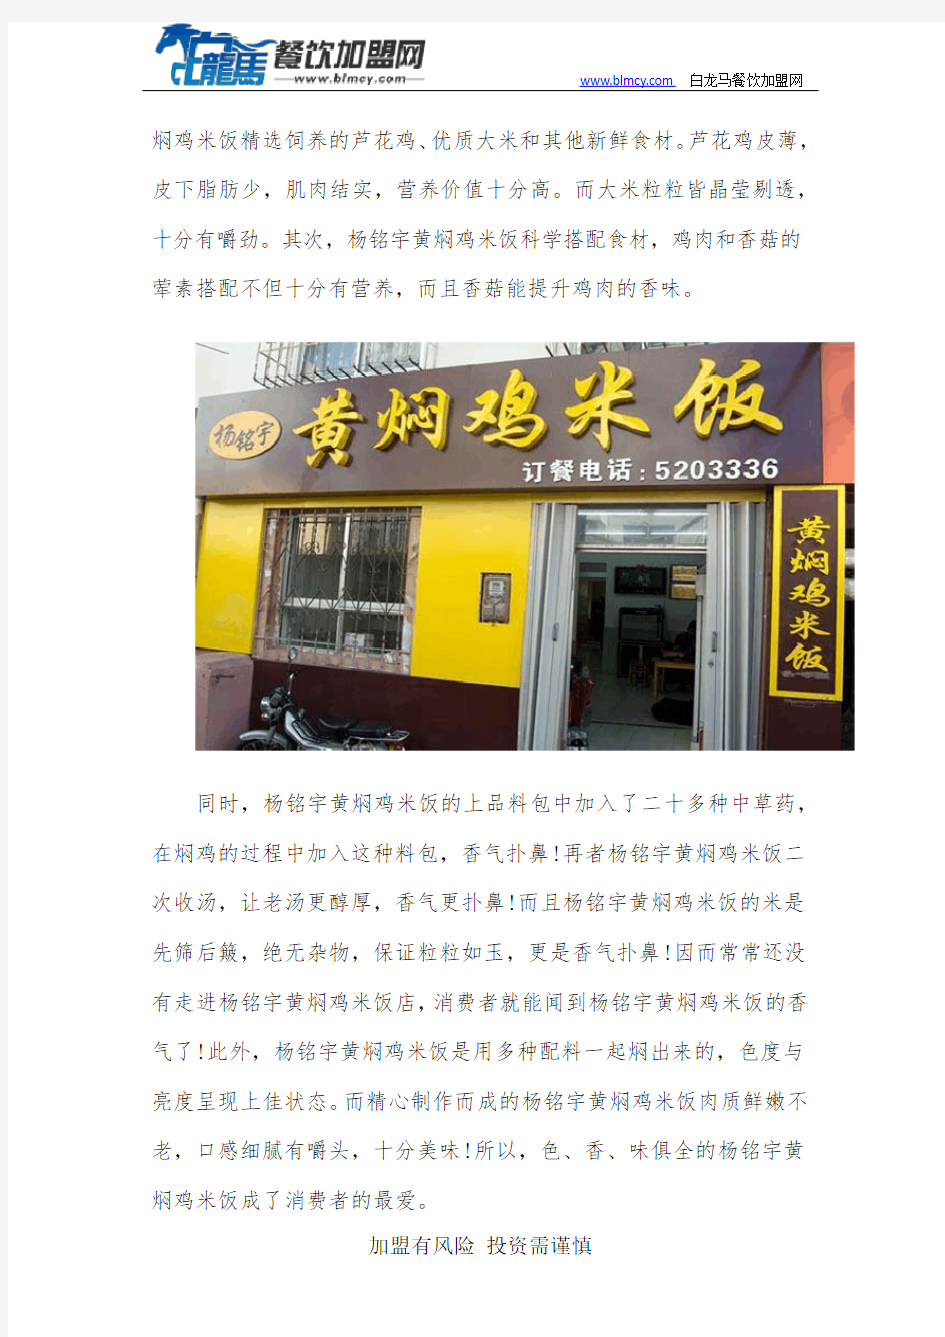 杨铭宇黄焖鸡酱料曝光,原来多年销量不减的原因是这个!